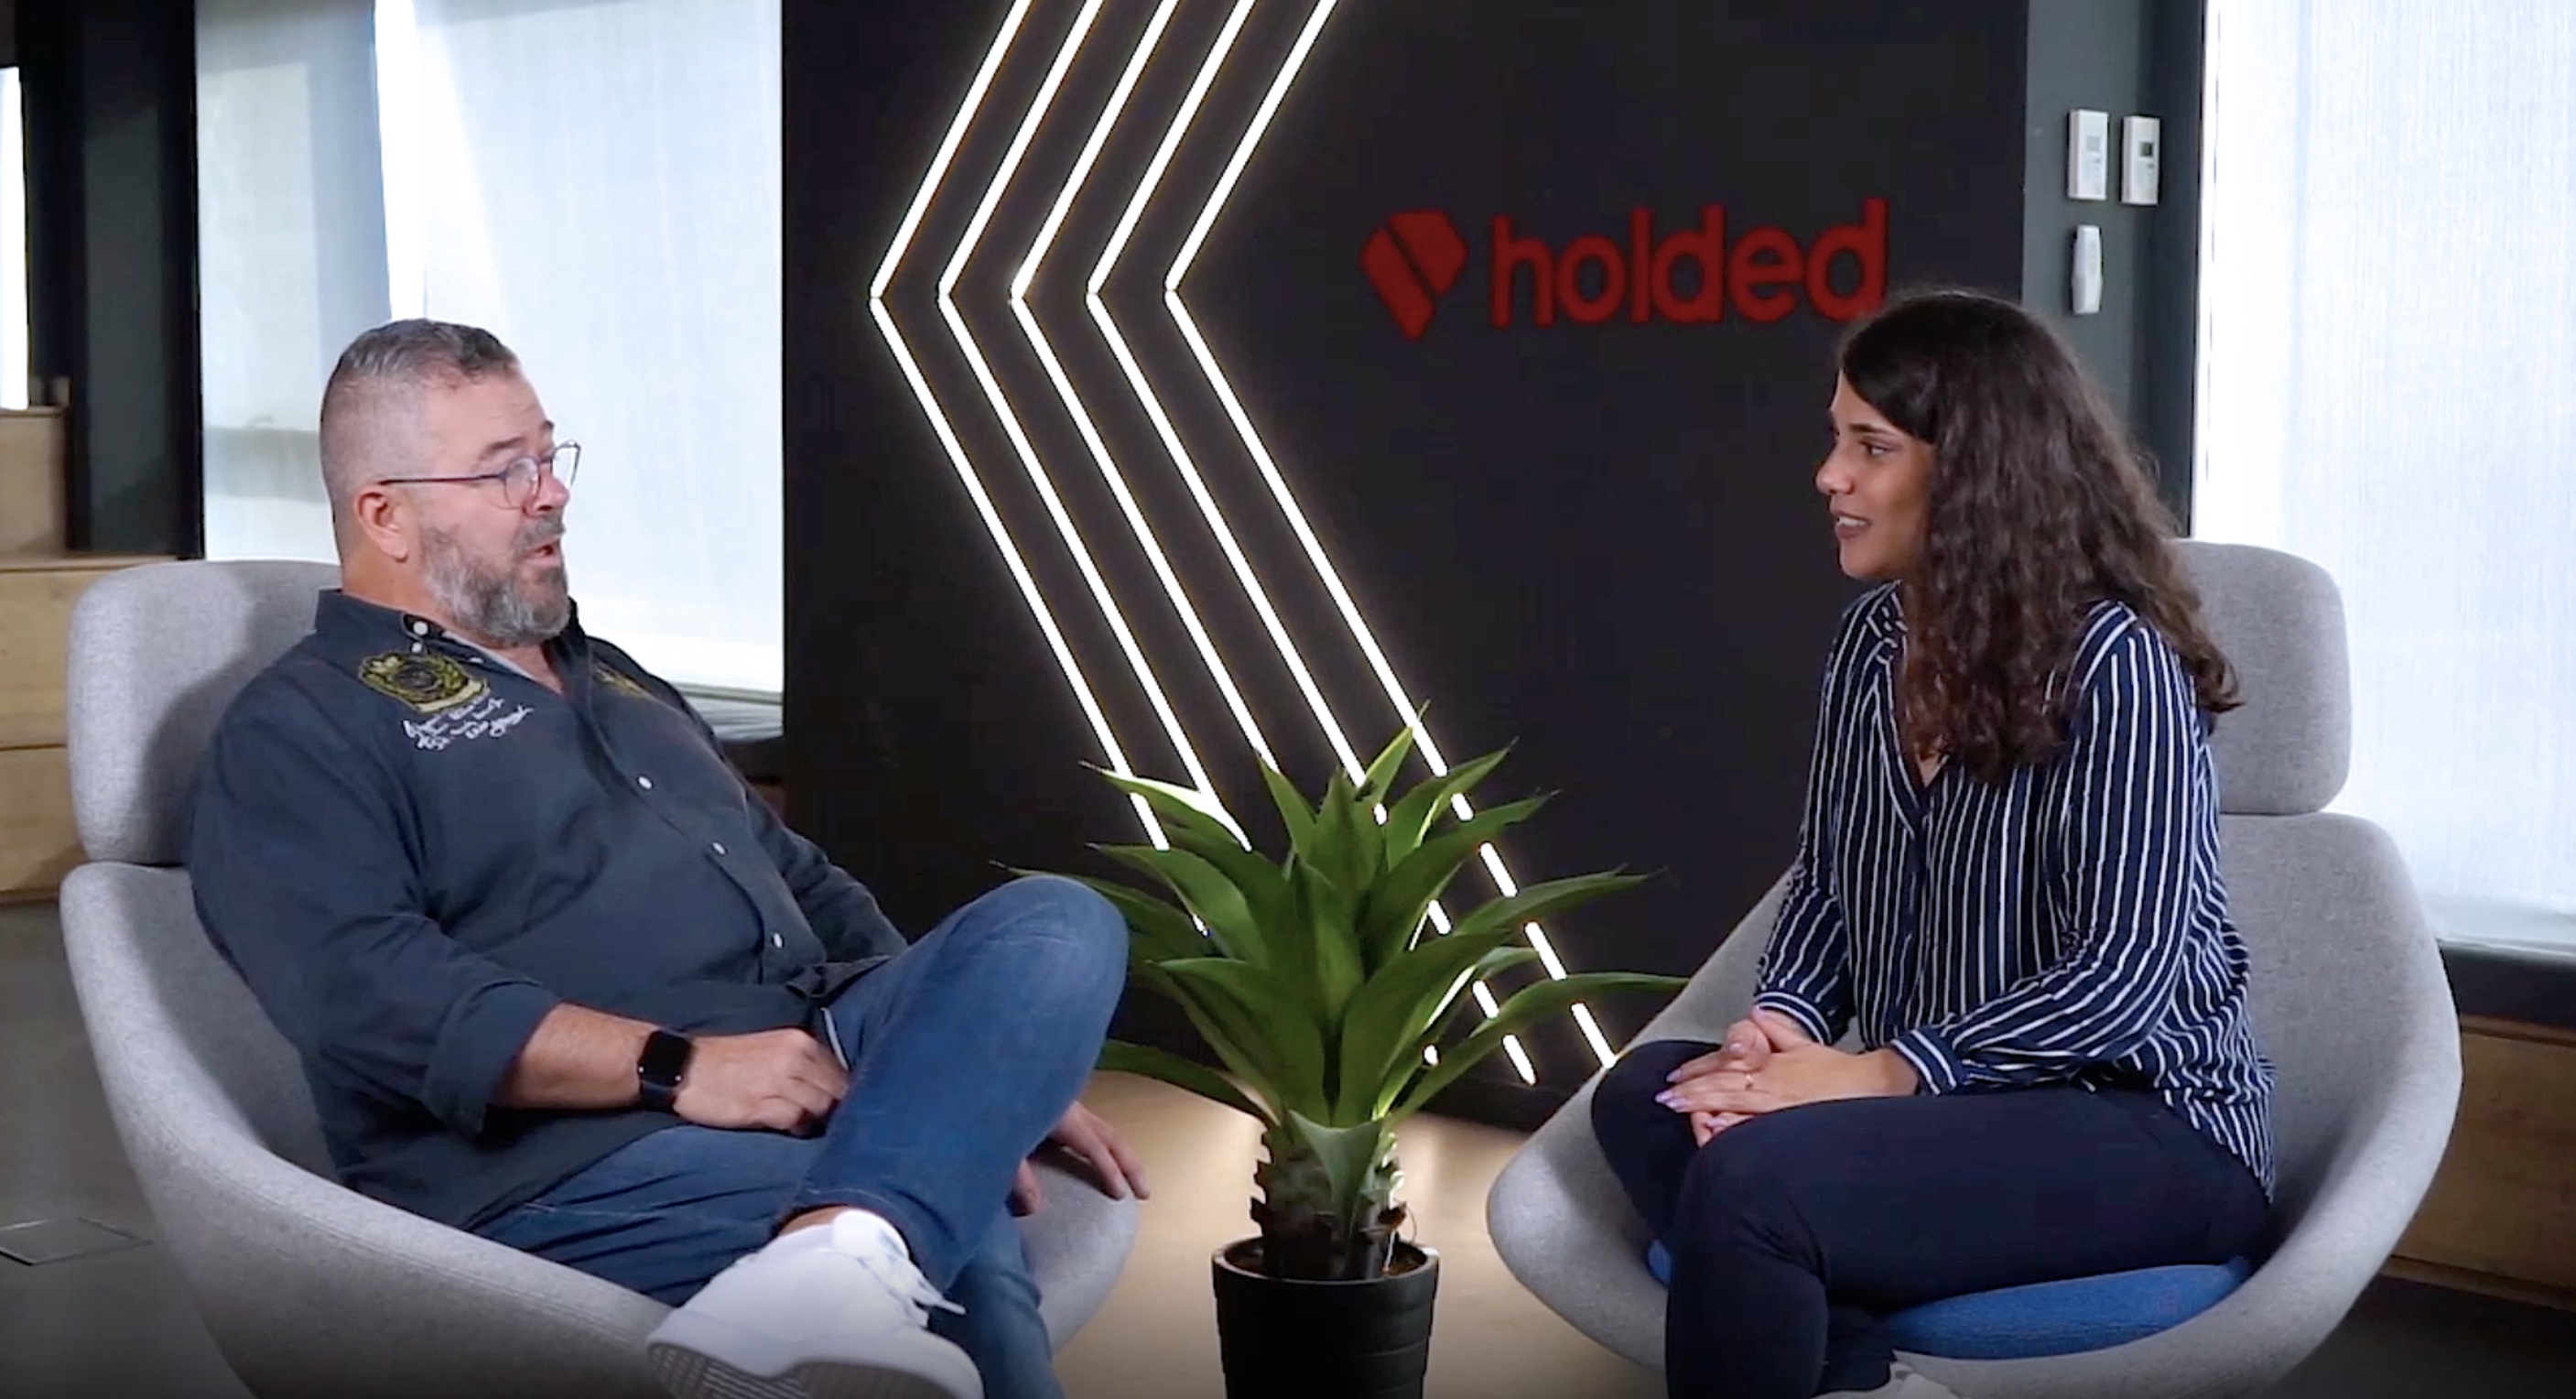 Fran Martínez, de Aixerrota Consulting, y Carla Ariza, de Holded, conversan sobre asesorías digitales